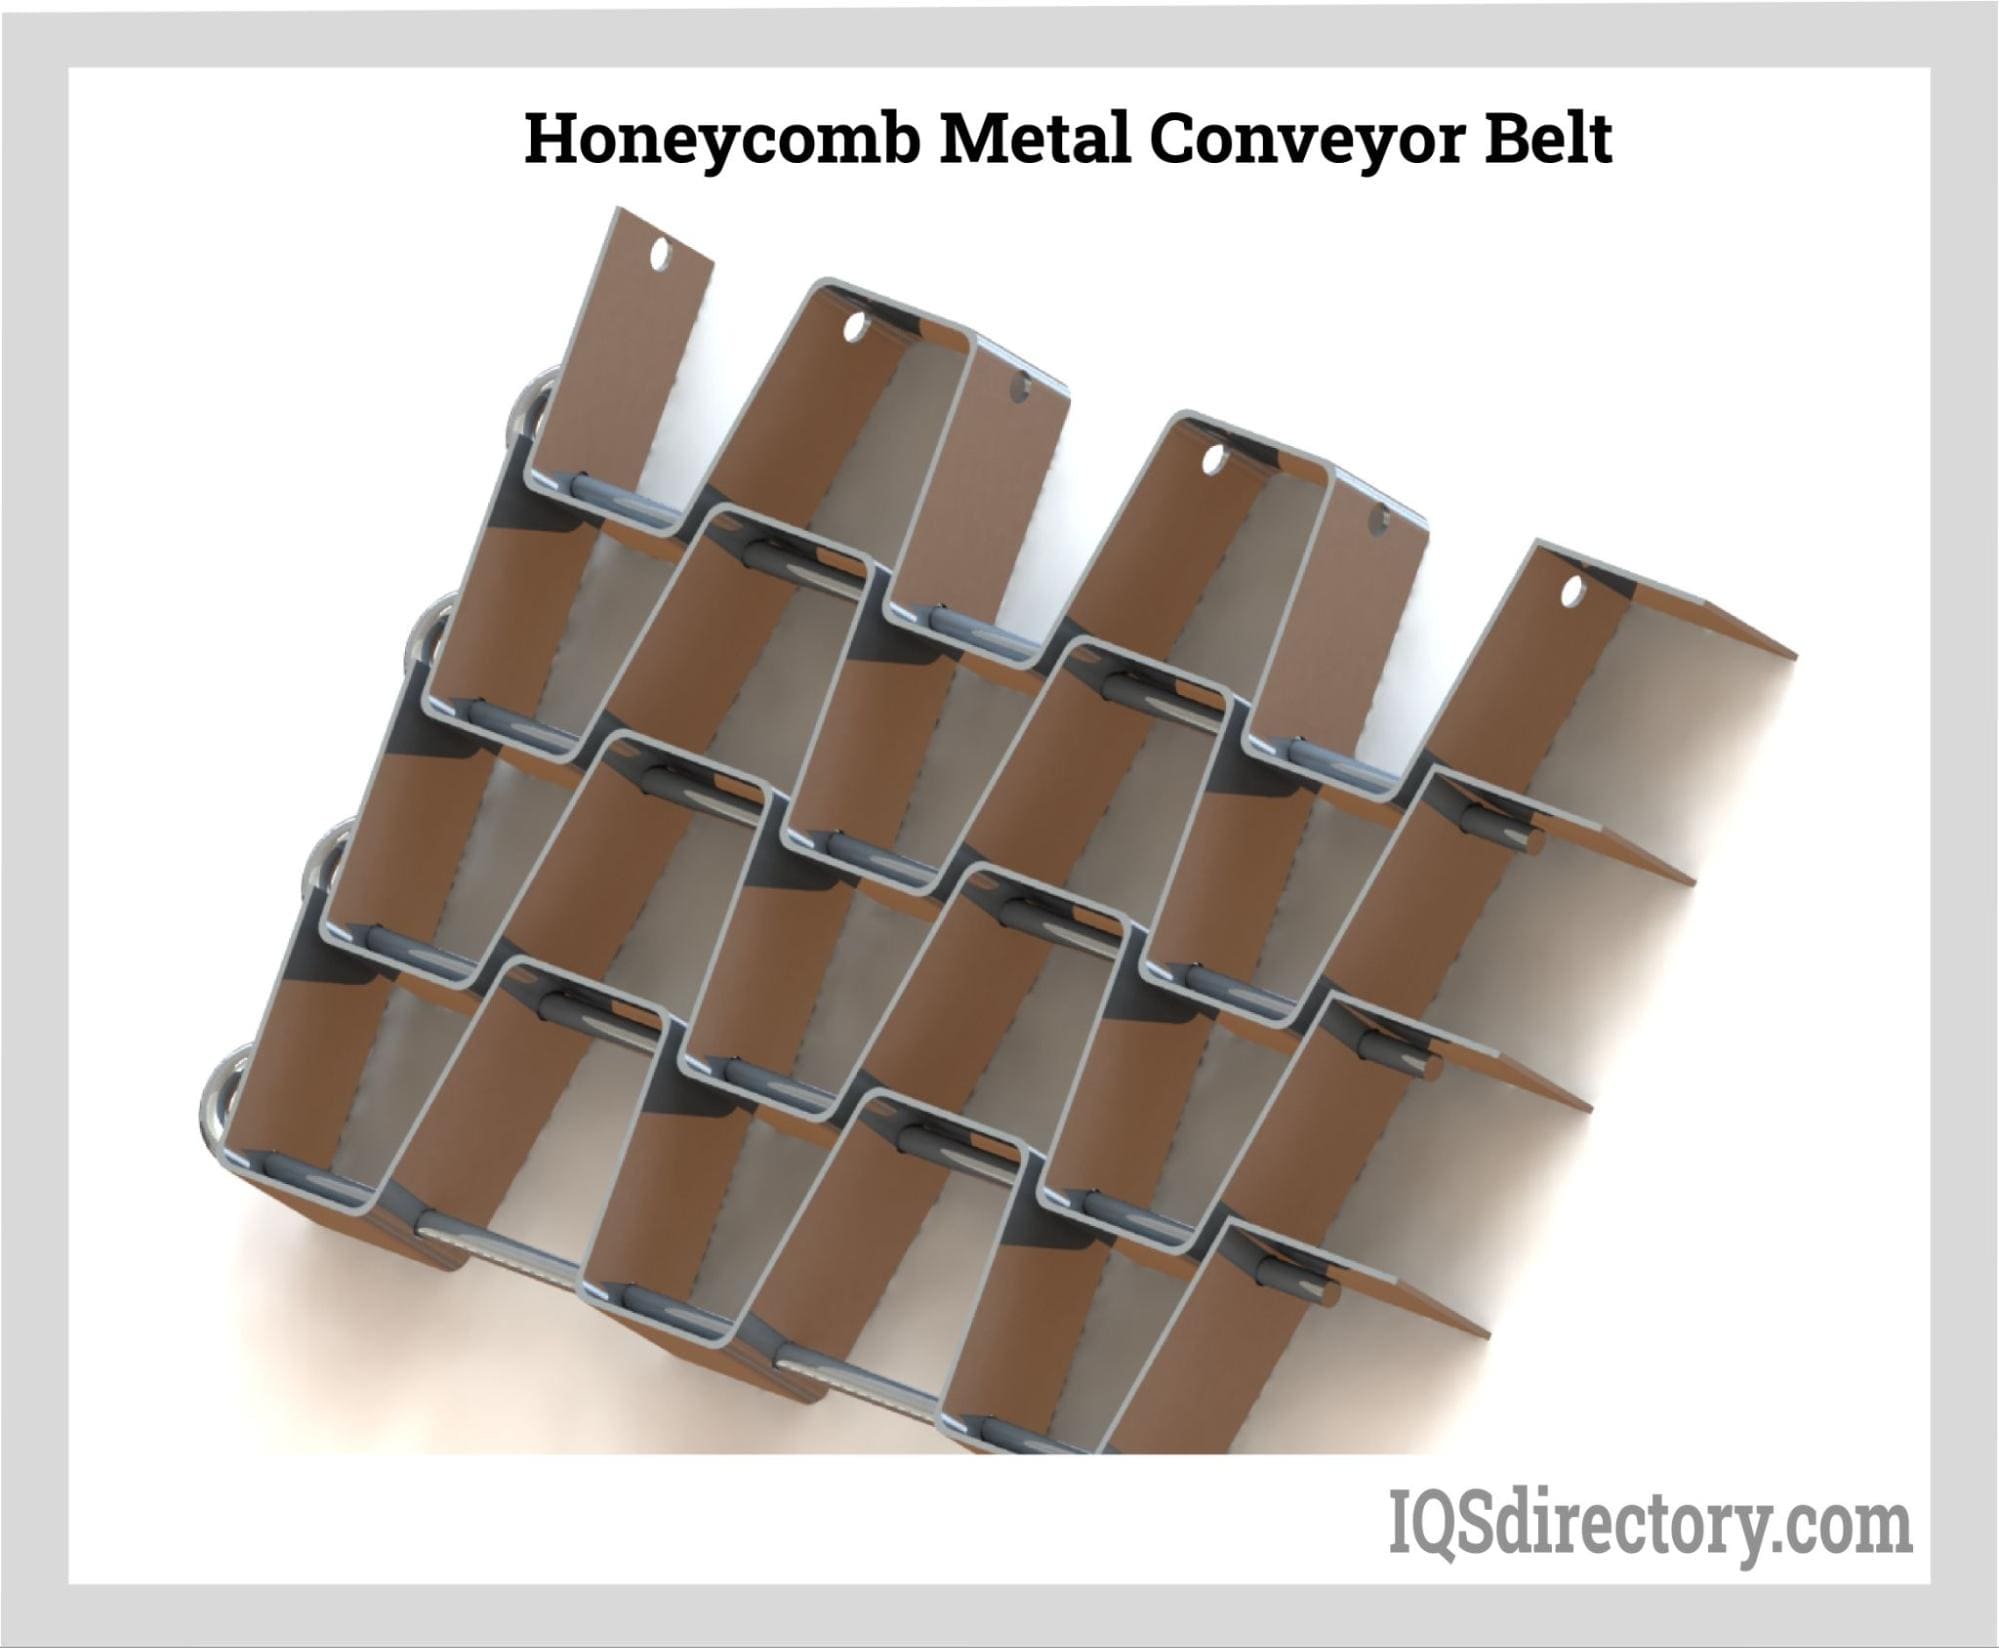 Honeycomb Metal Conveyor Belt